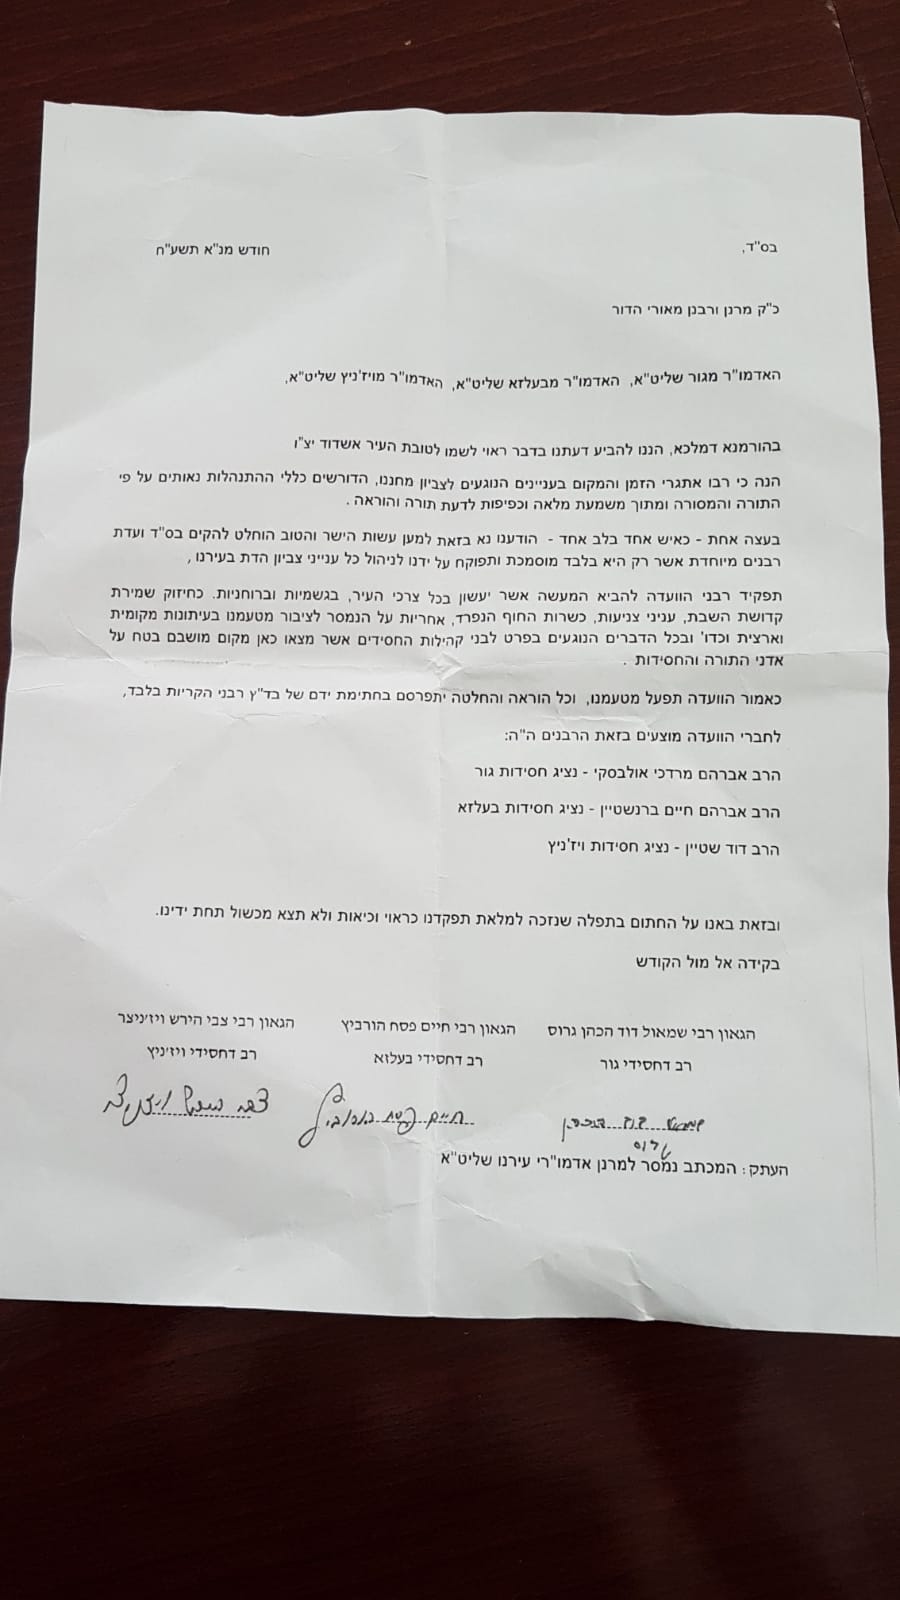 אשדוד סוערת: מכתבי הרבנים שפורסמו בעיתונים היו זיוף